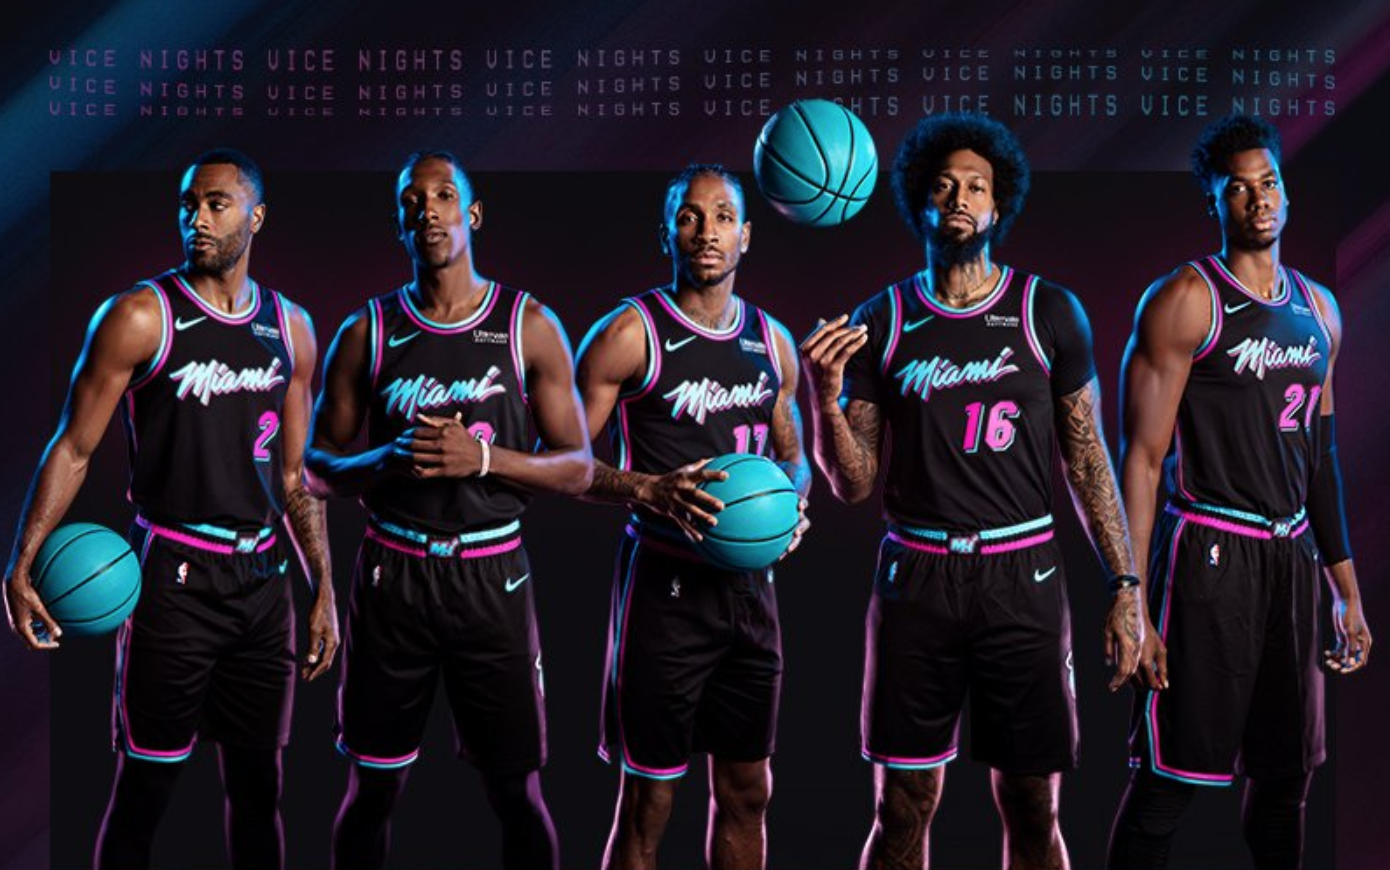 Miami Heat phải từ bỏ bộ đồng phục City Edition siêu đẹp chỉ vì... quá xui xẻo - Ảnh 1.